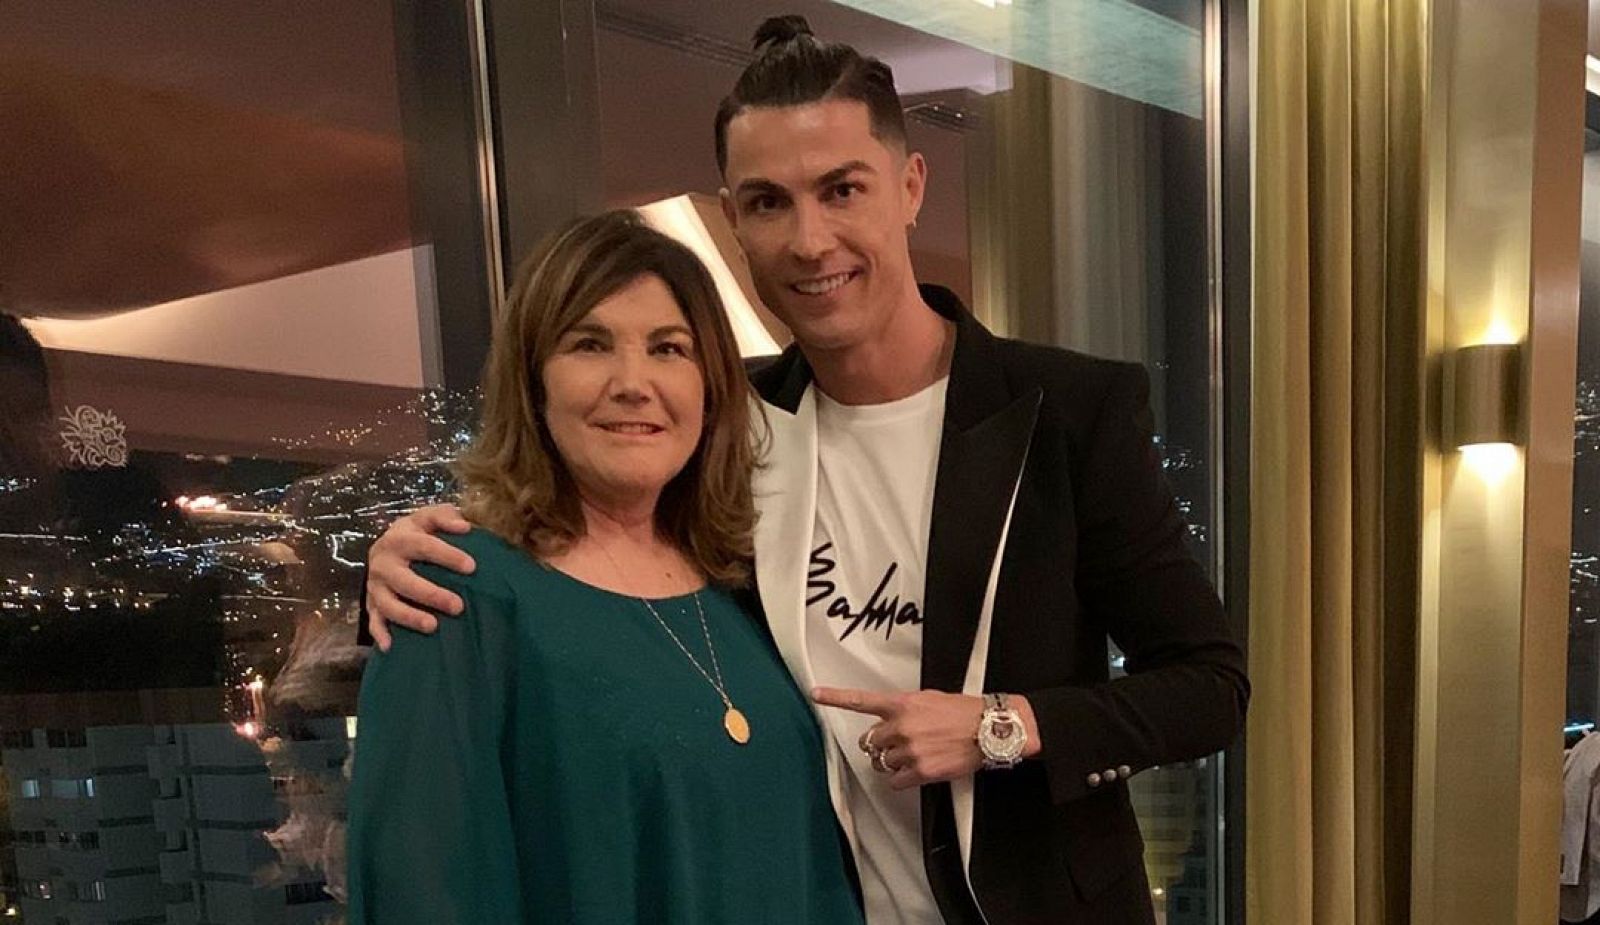 Corazón - Dolores Aveiro, madre de Cristiano Ronaldo: ingresada tras sufrir un infarto cerebral